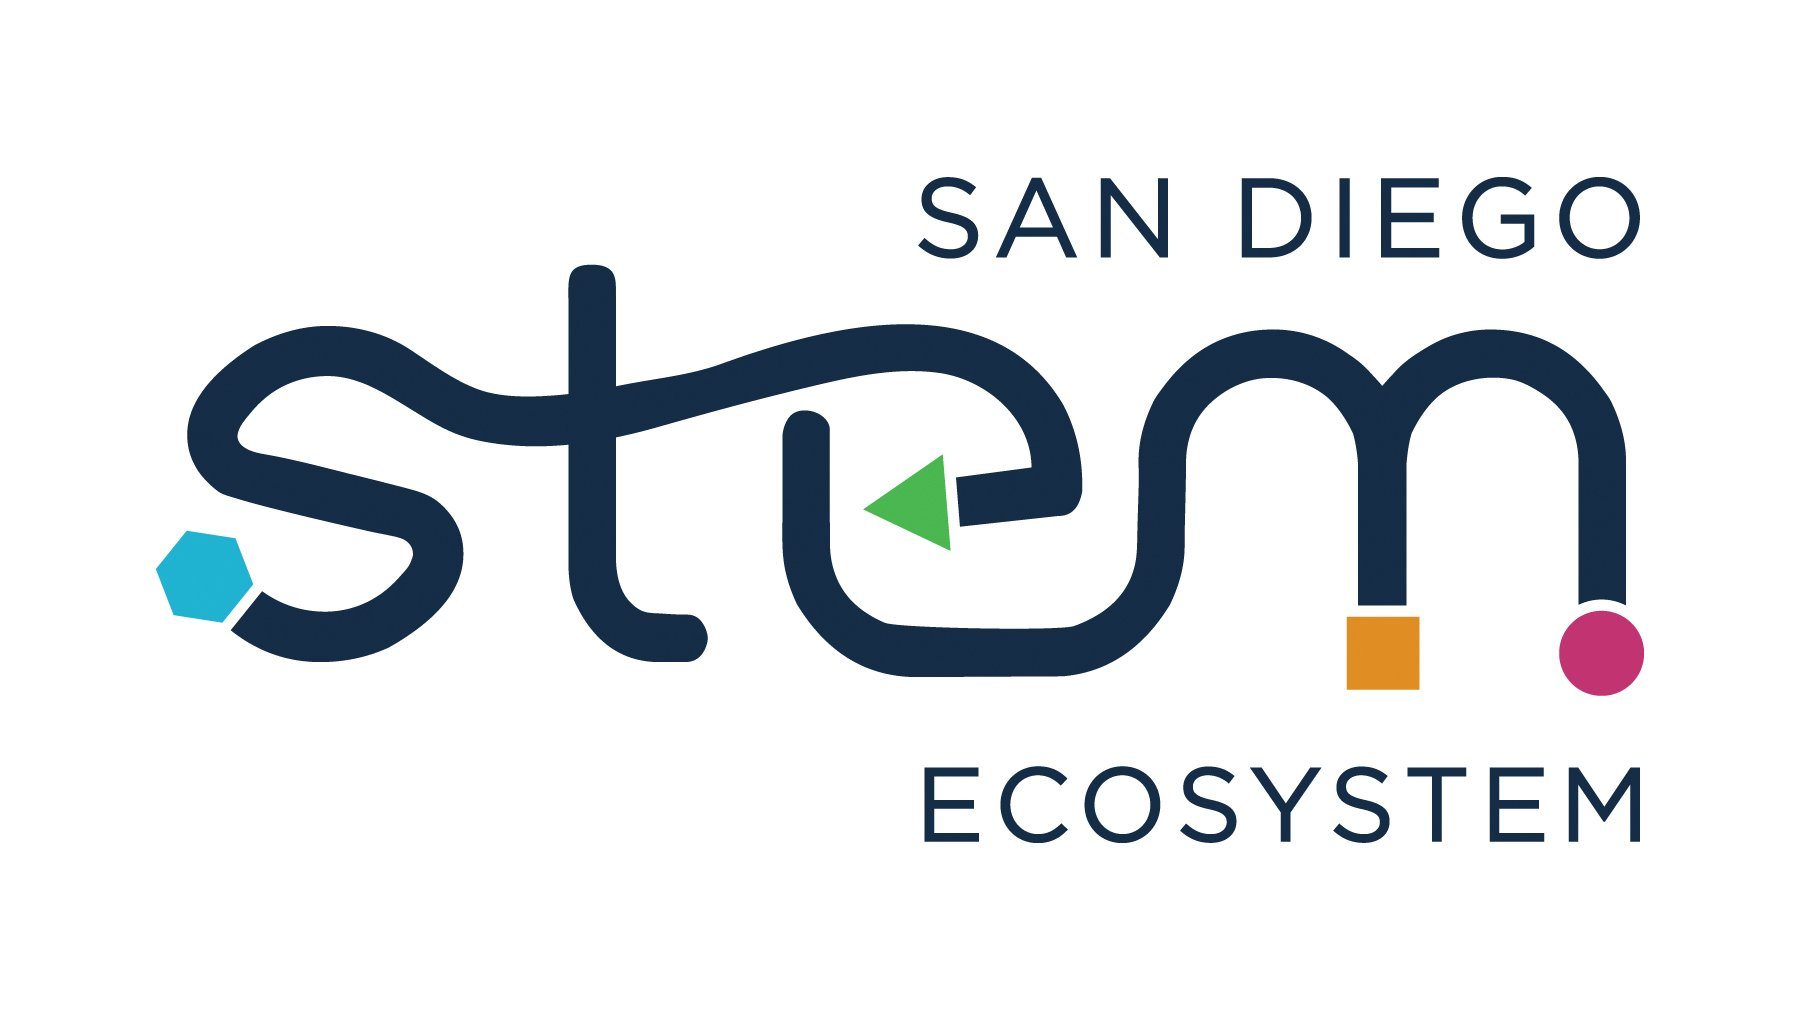 San Diego STEM Ecosystem logo